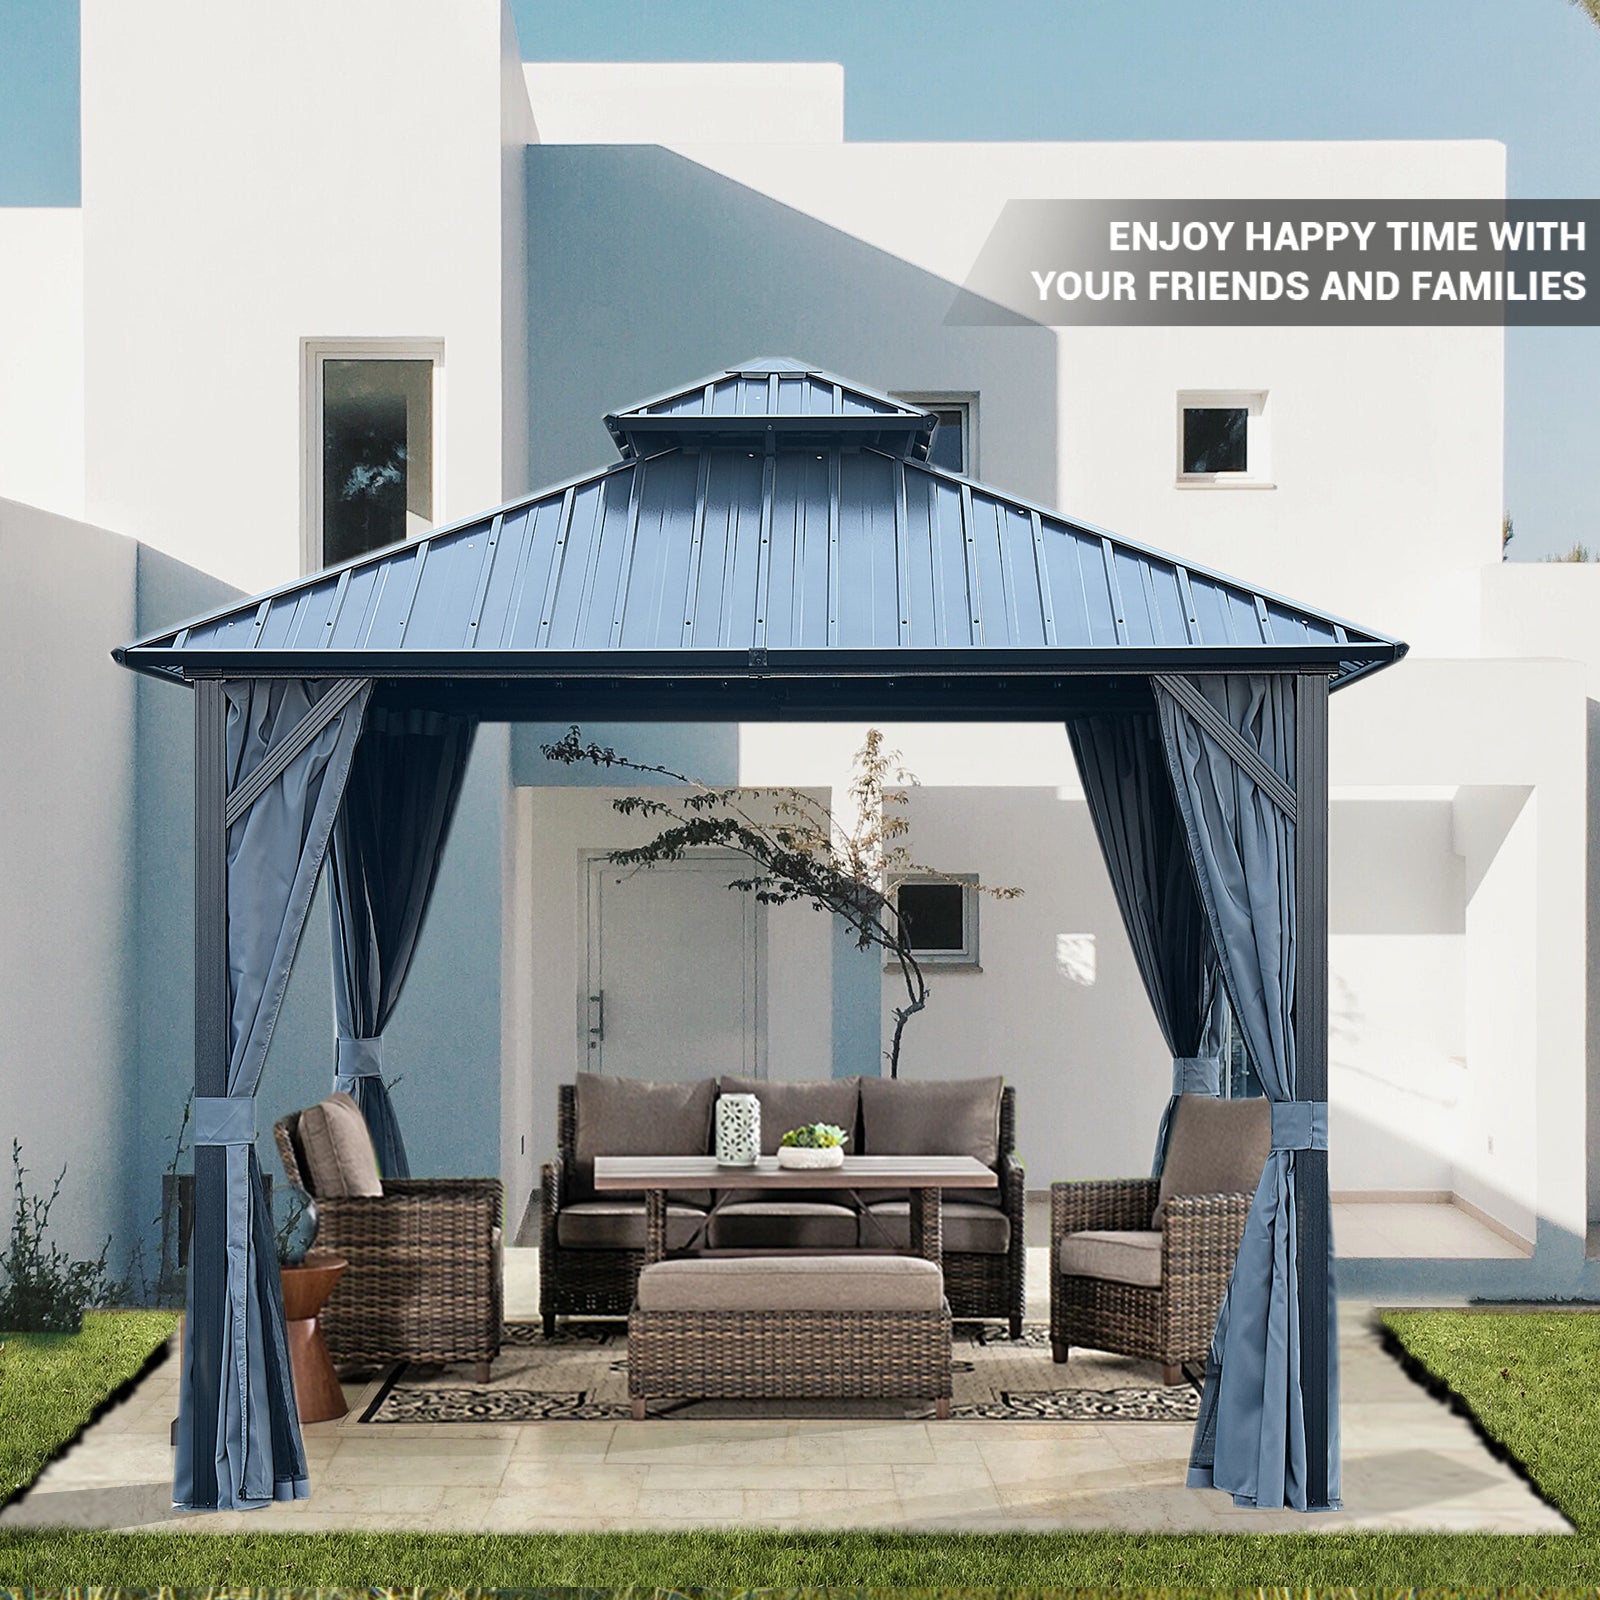 Backyard Gazebo With Steel Canopy